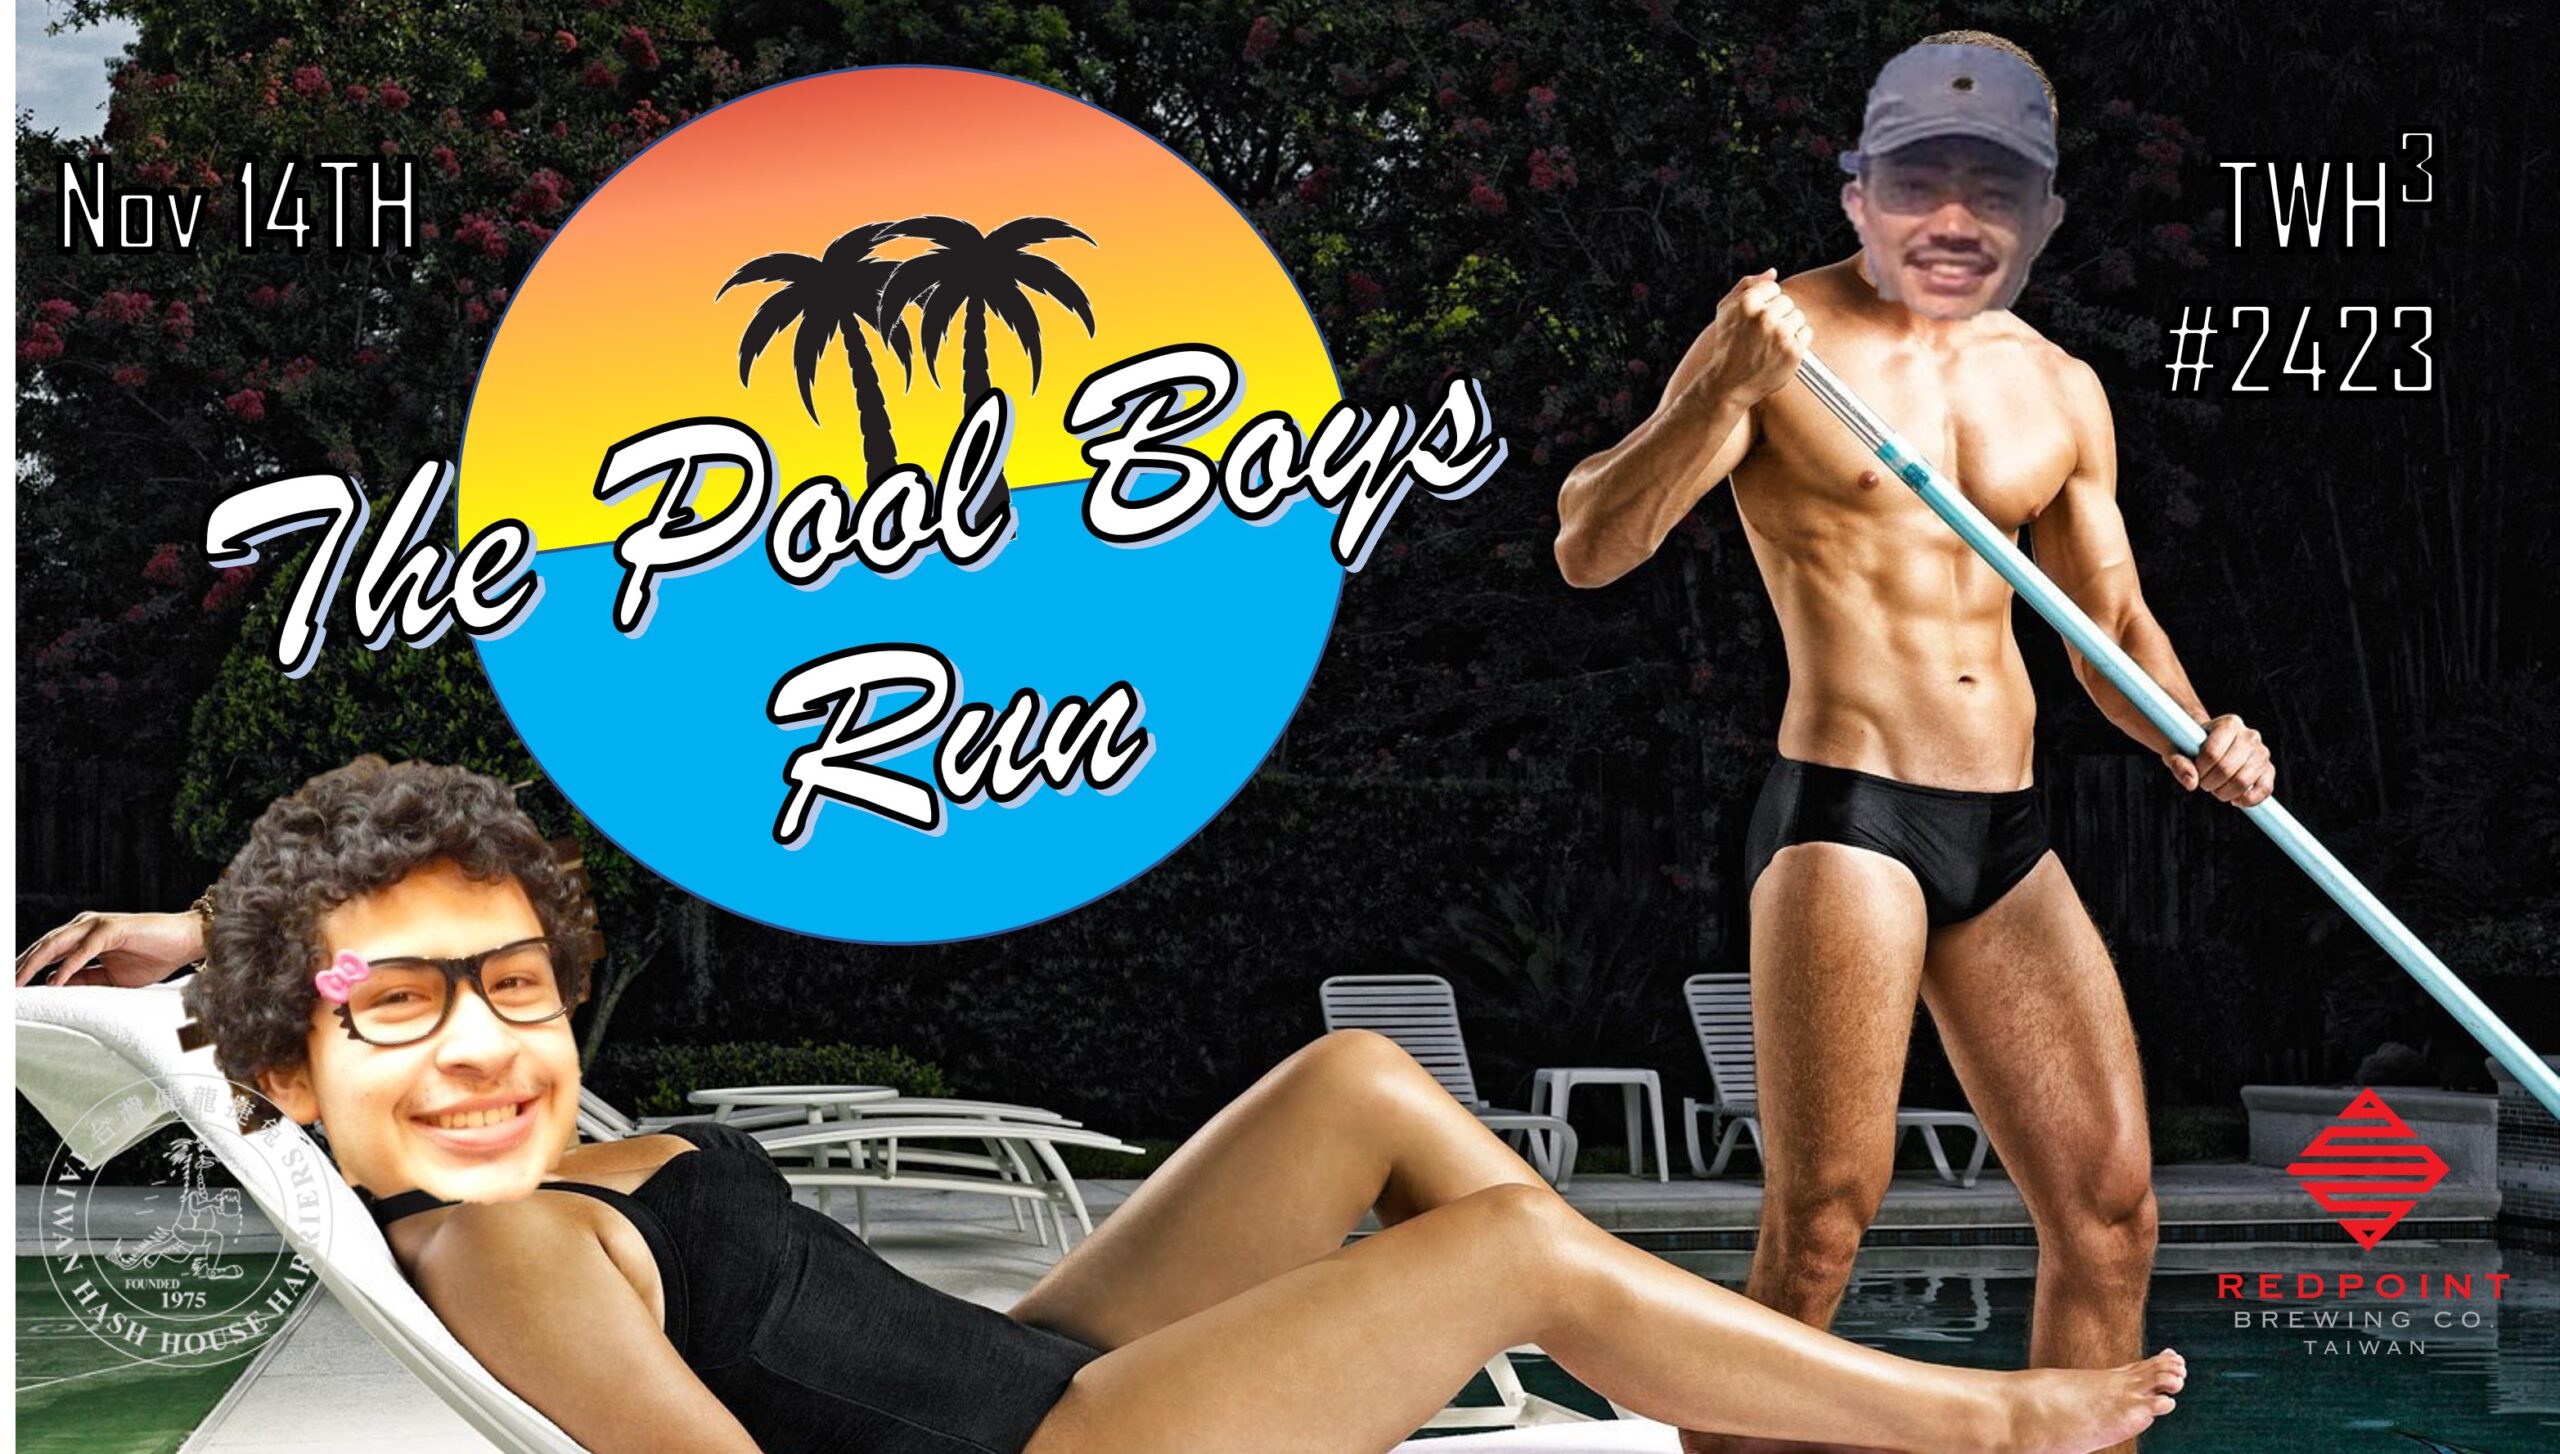 #2423 - The Pool Boys Run